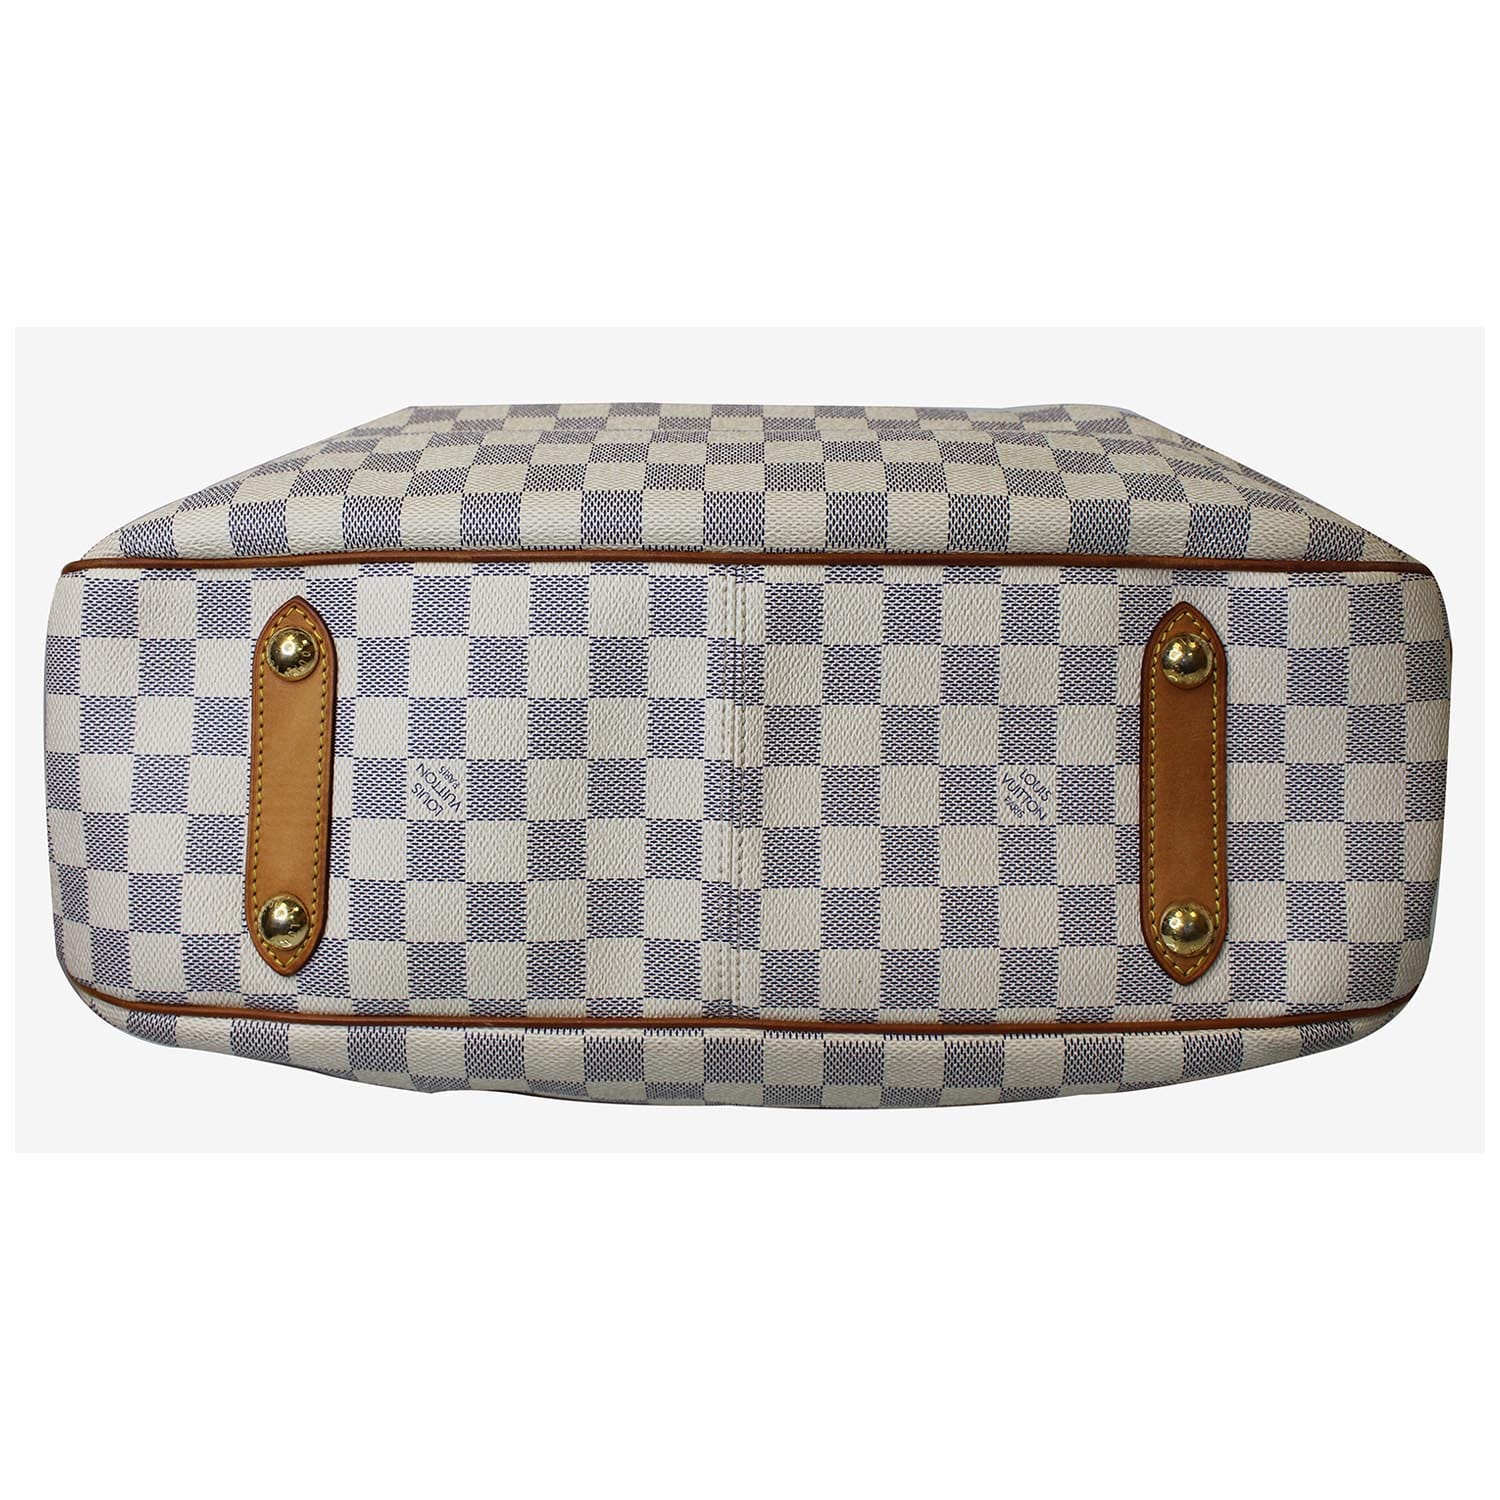 ❤️REVIEW- Louis Vuitton Siracusa GM Damier Azur bag 